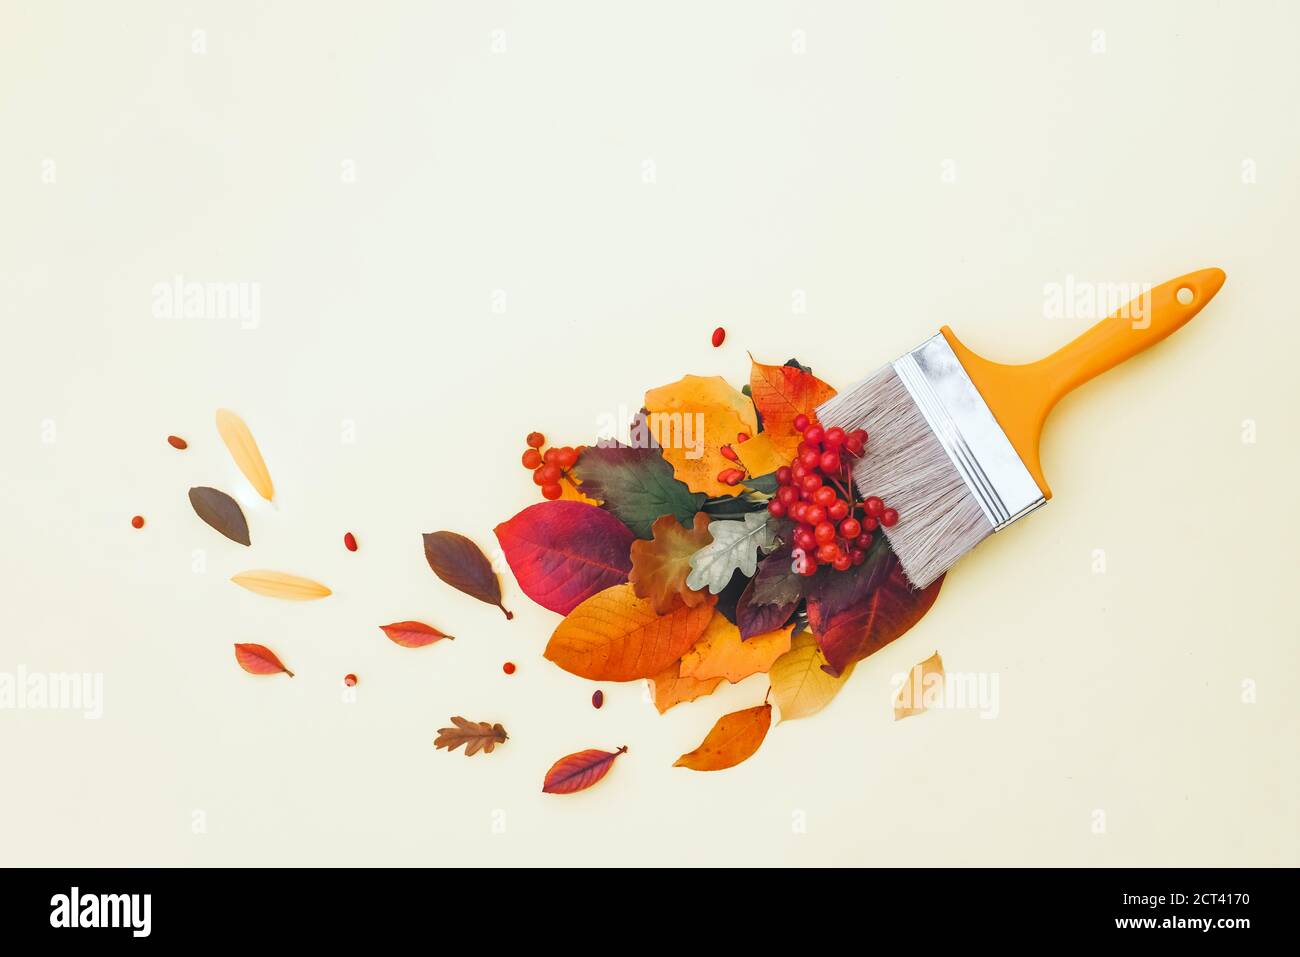 Peinture au pinceau avec feuilles d'automne colorées, concept créatif de l'automne, chute de feuille Banque D'Images